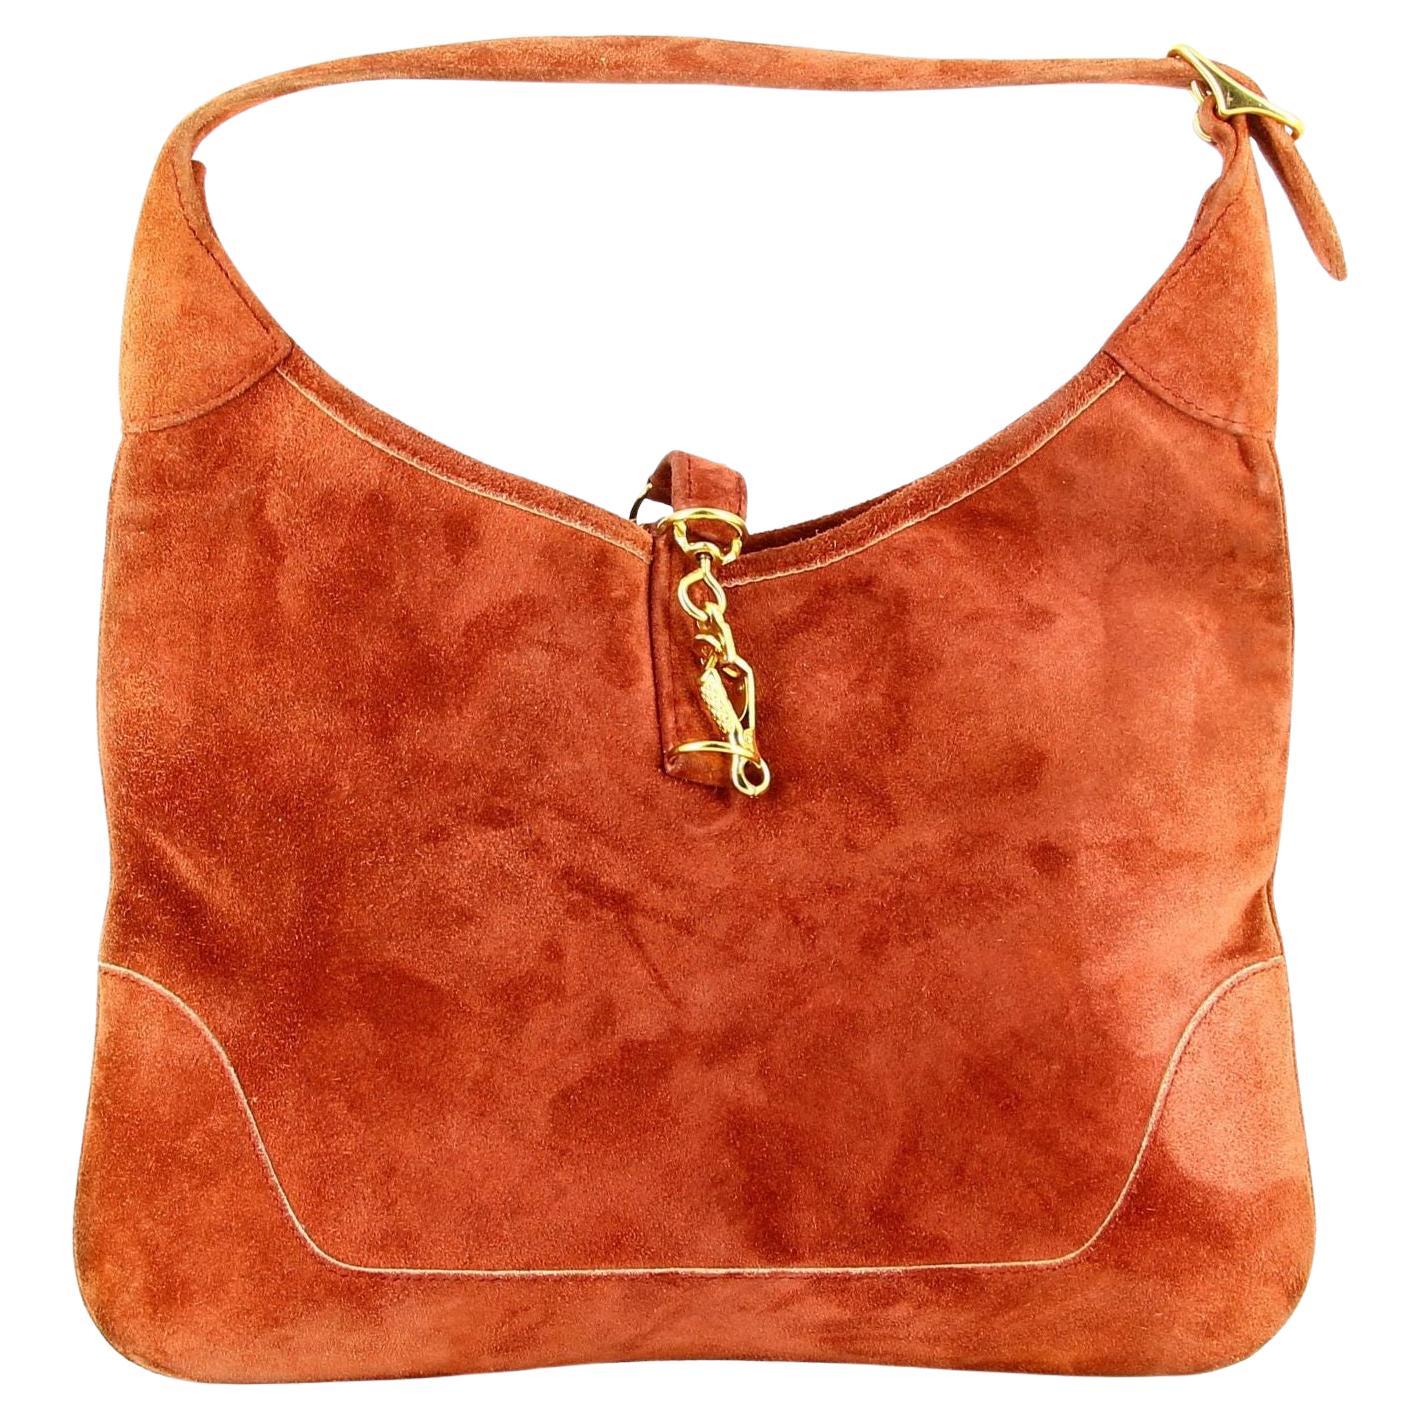 Burgundy Bag Suede - 9 For Sale on 1stDibs | burgundy suede bag 